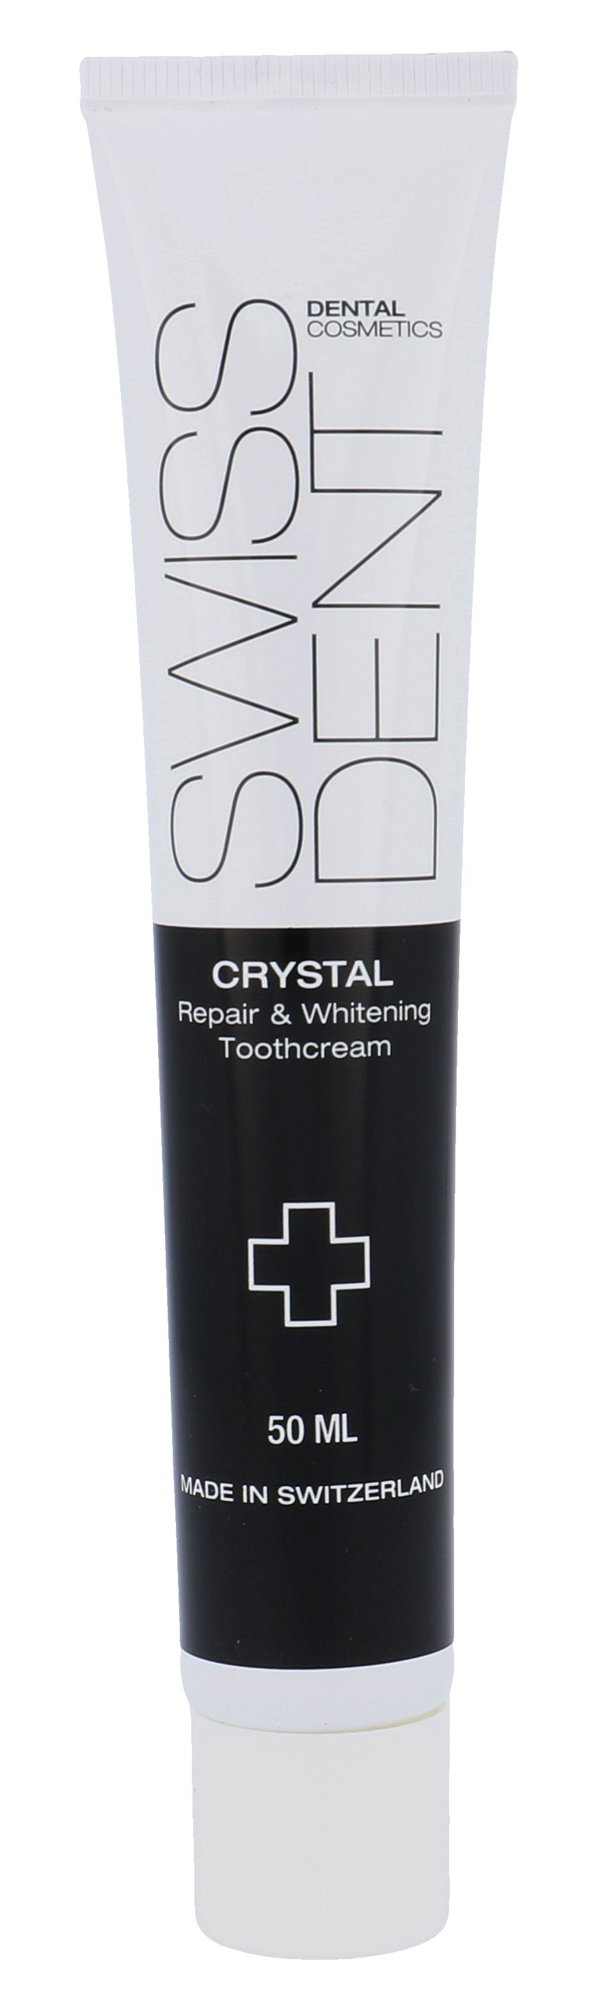 Swissdent Crystal Repair & Whitening 50ml dantų pasta